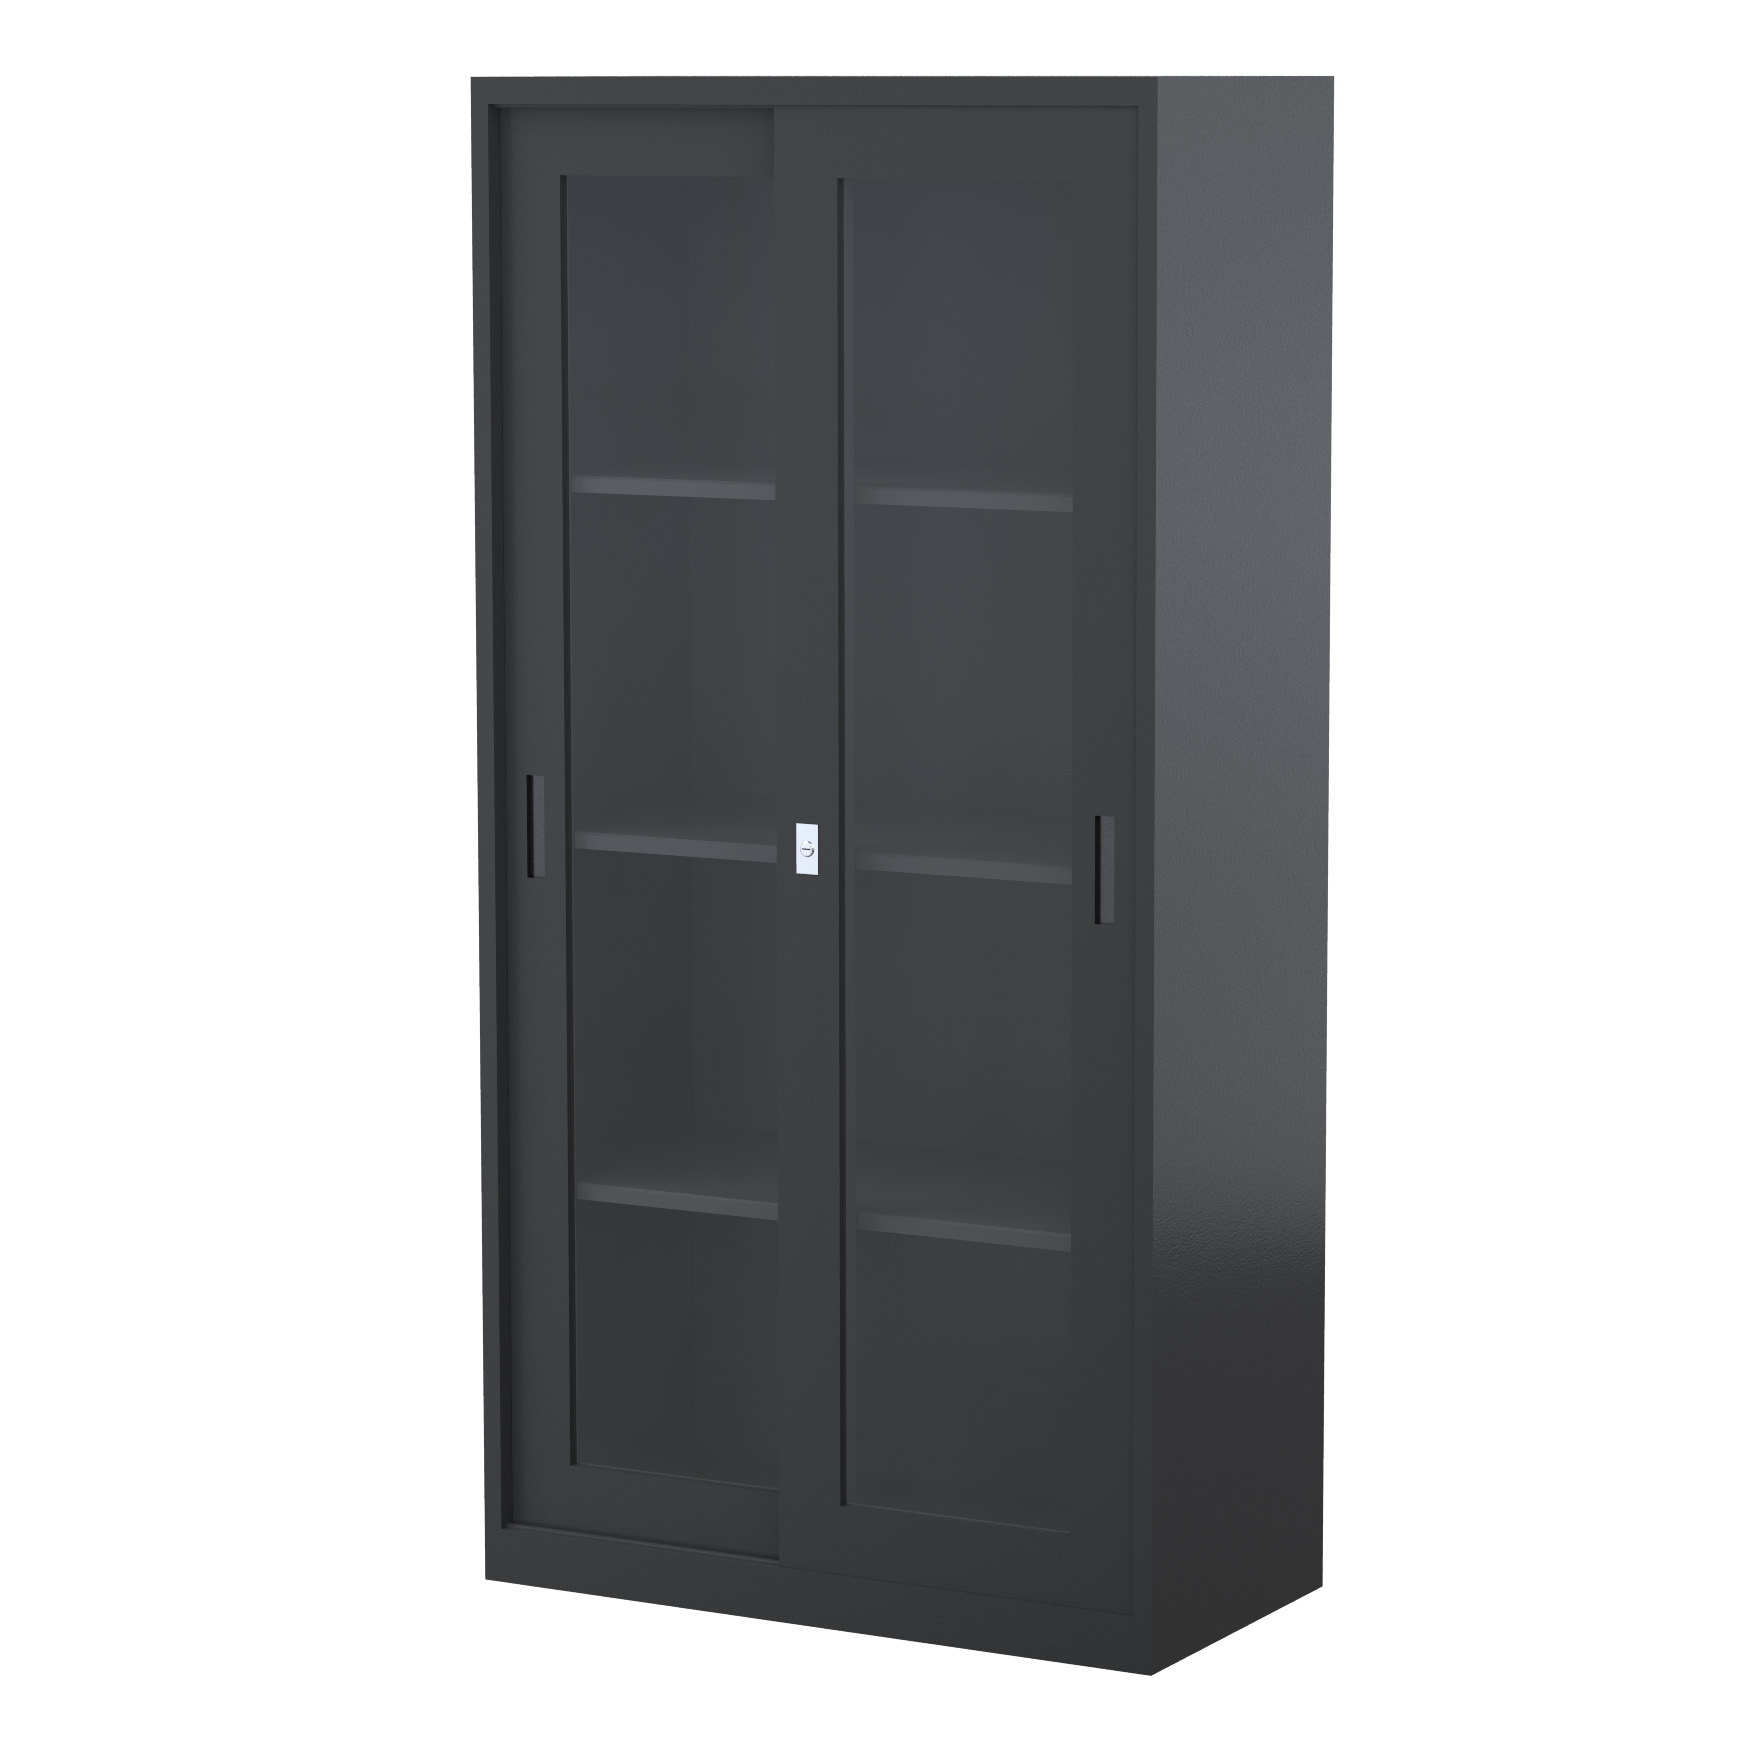 GD1830_1500 - STEELCO SG Cabinet 1830H x 1500W x 465D - 3 Shelves-GR9.jpg